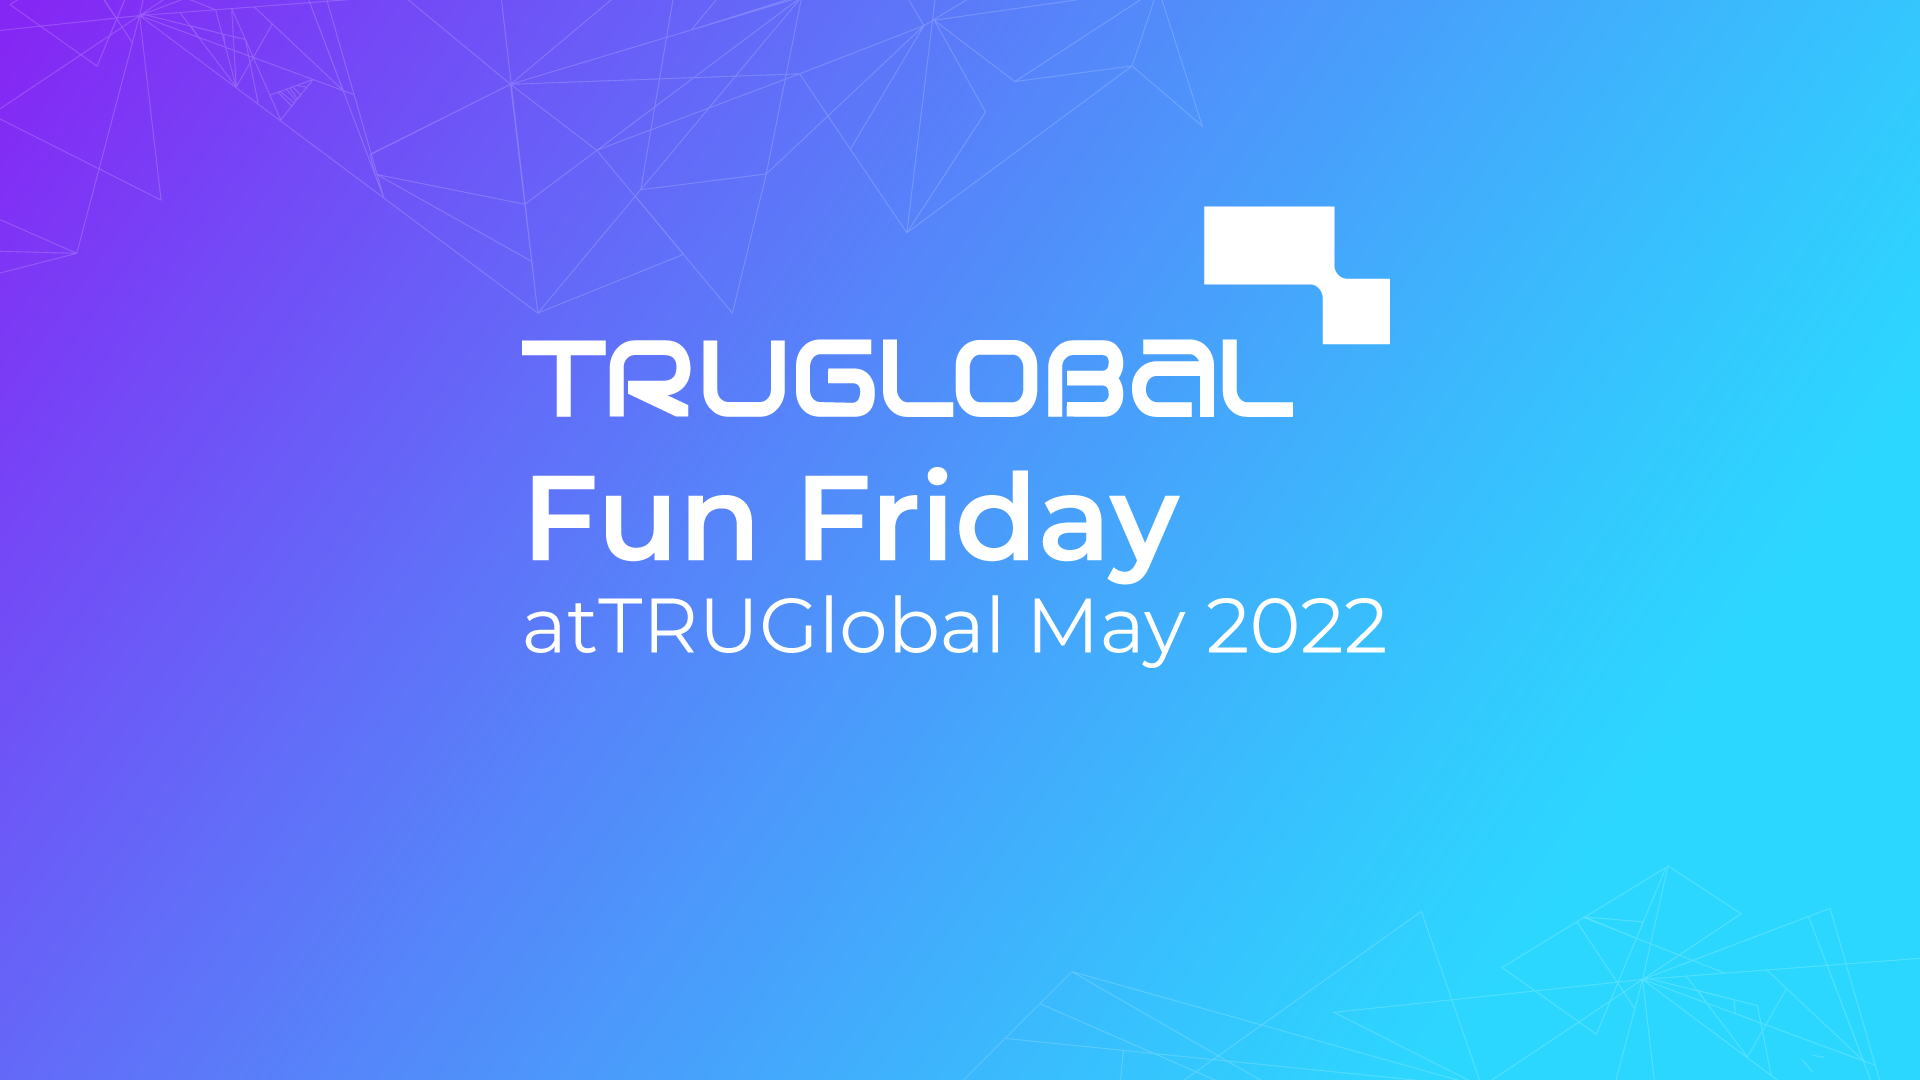 Fun Friday at TRUGlobal